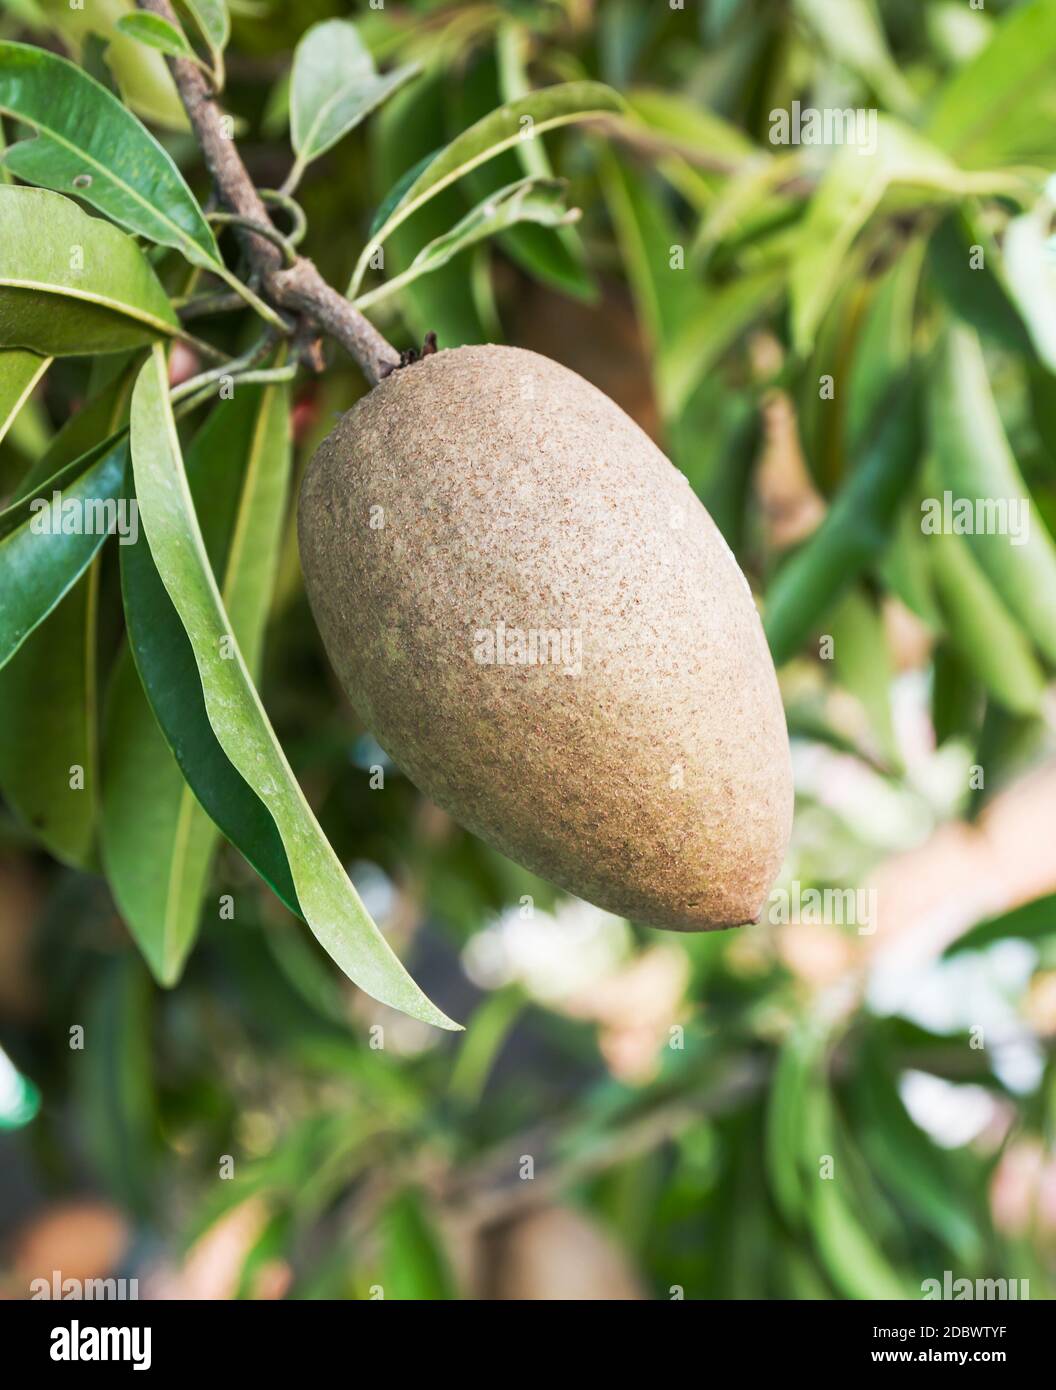 Sapodilla fruit or  Achras sapota on the tree Stock Photo